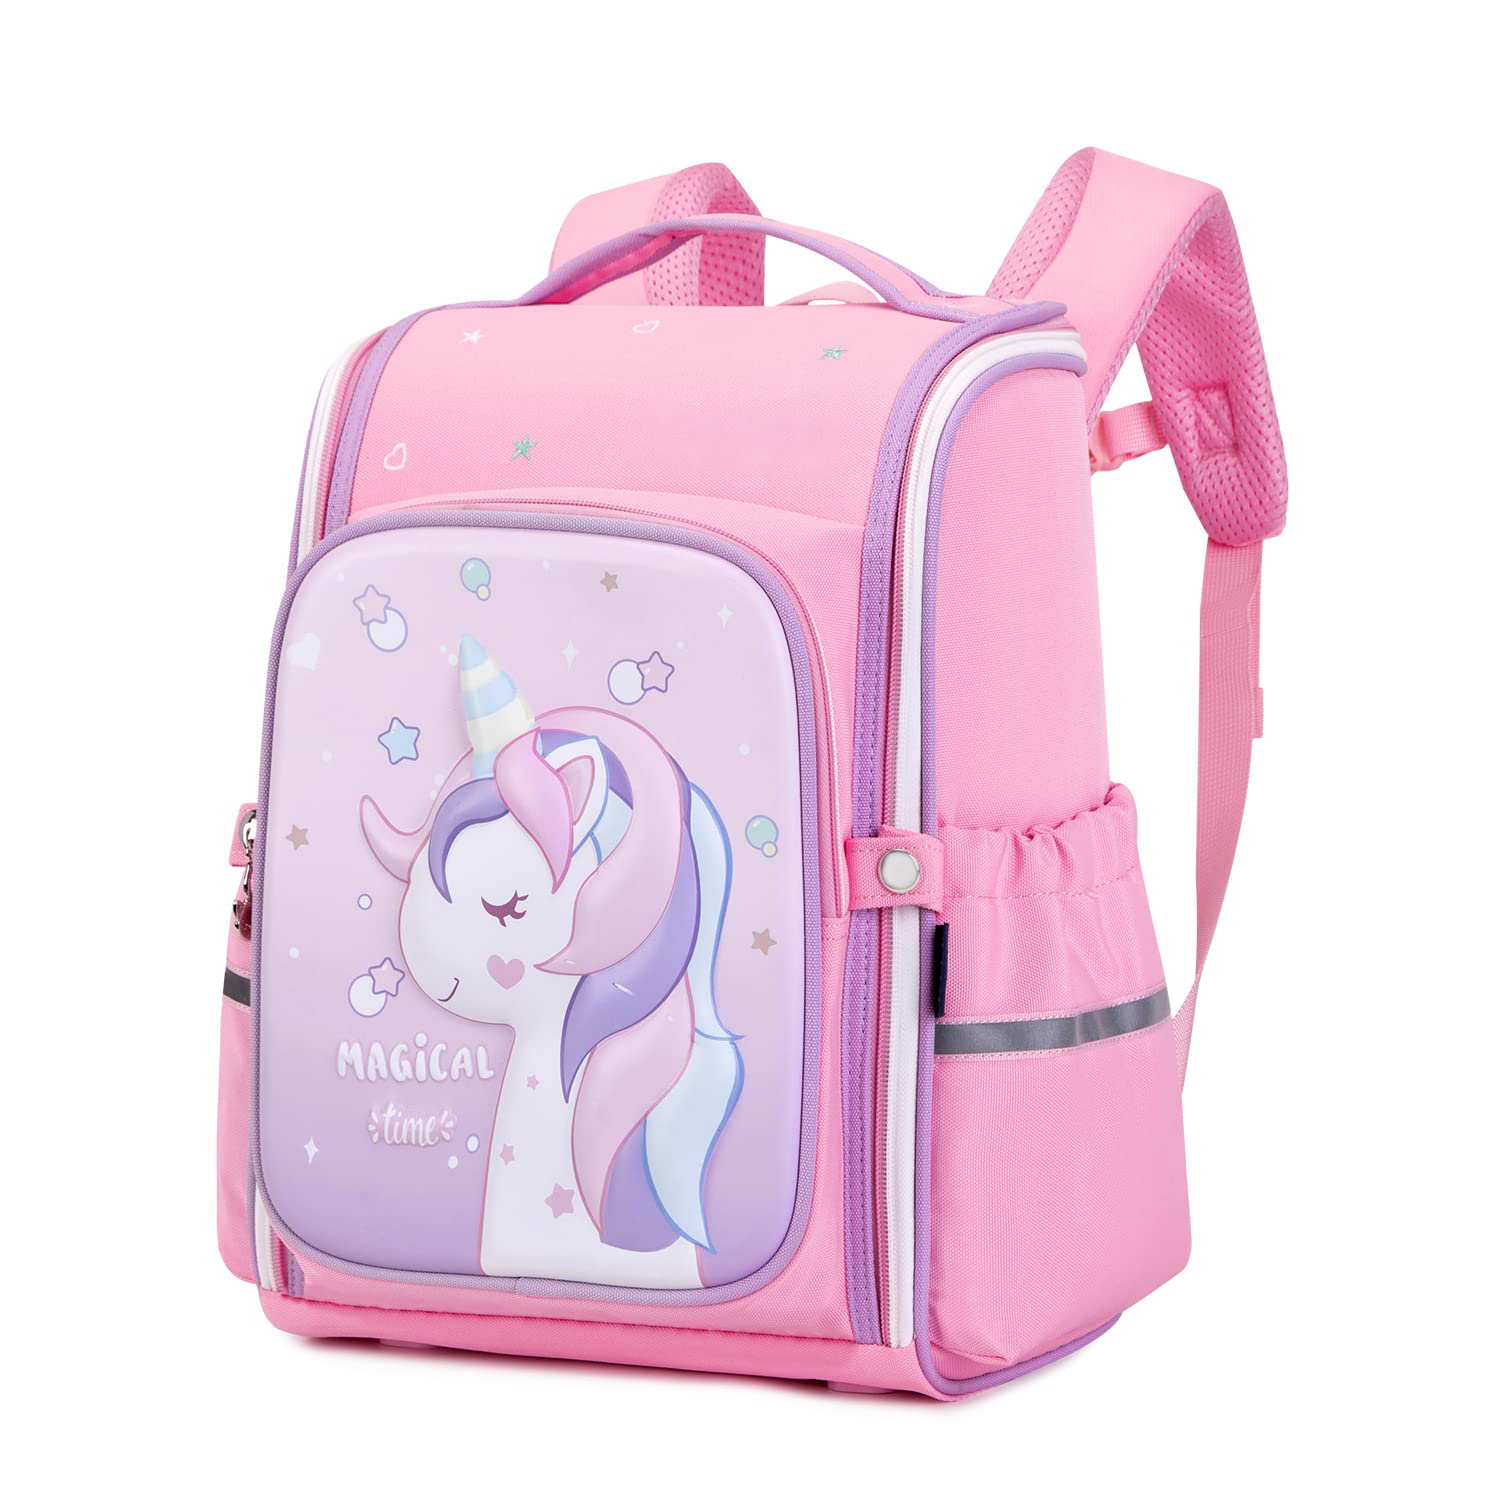 İbtidai məktəb unicorn sevimli bel çantası yumşaq çiyin qayışı